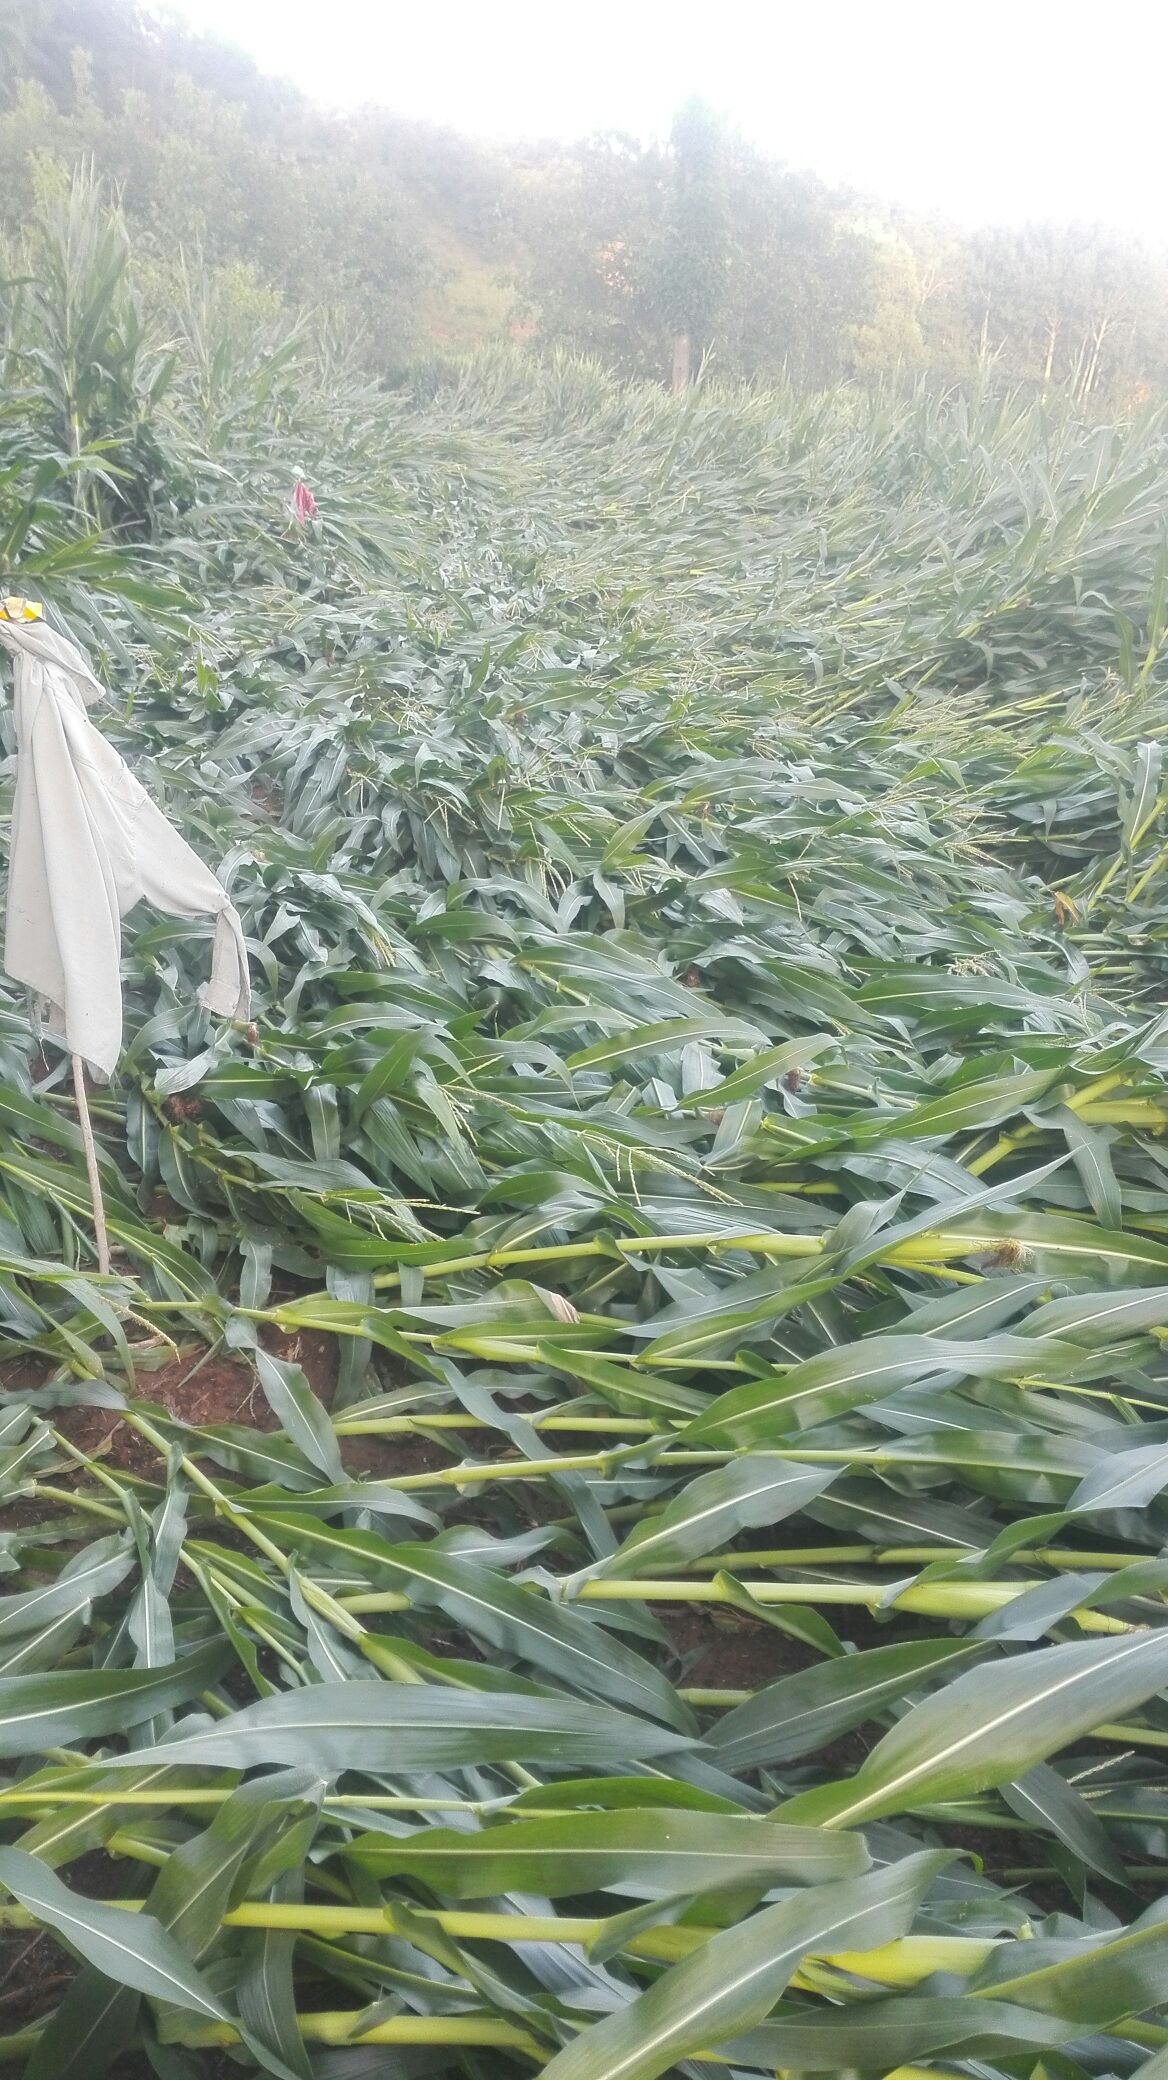 大雨导致玉米受灾图片图片